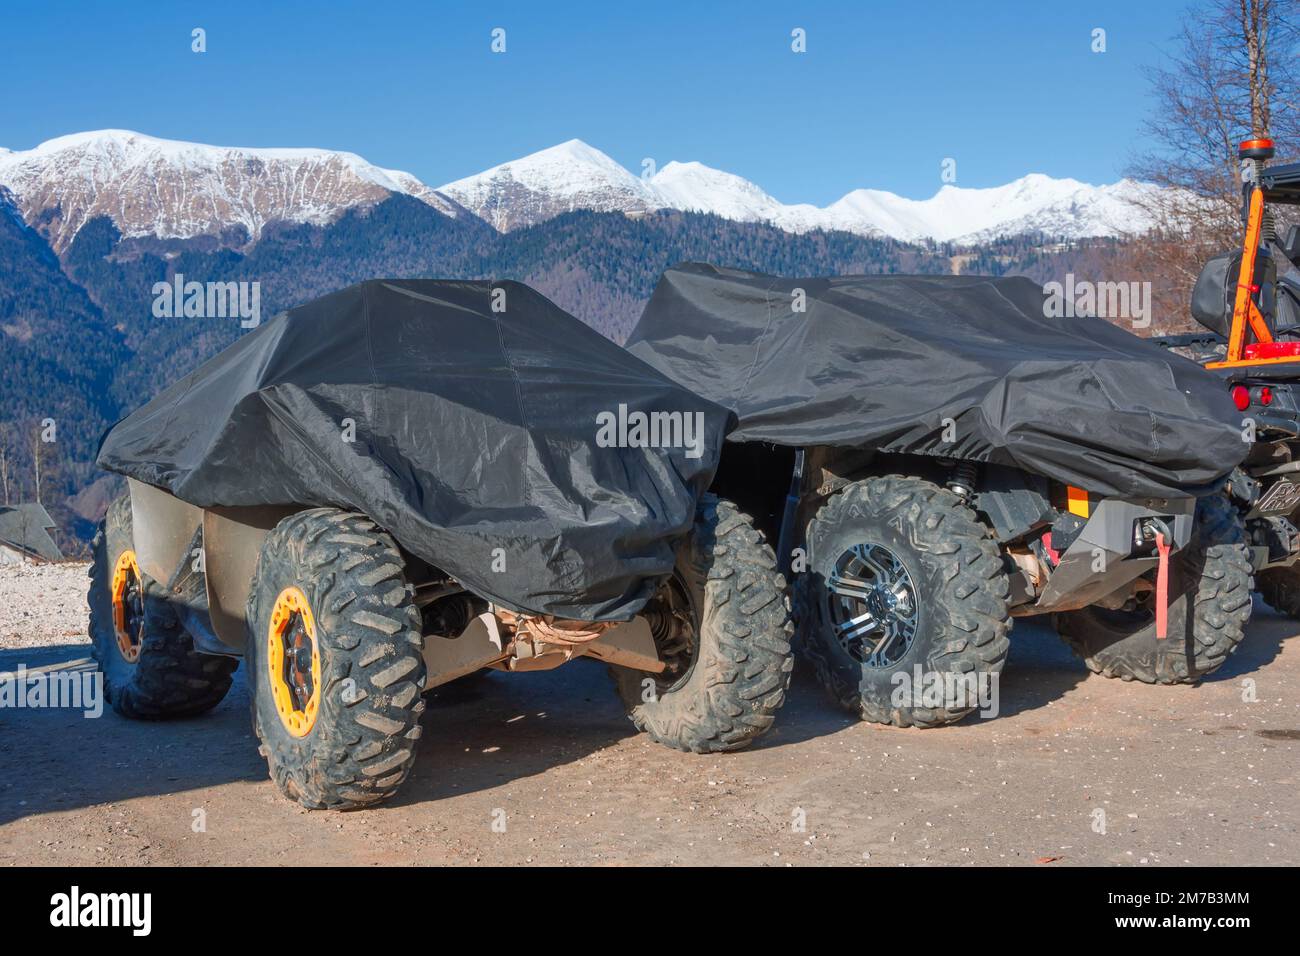 El refugio con una cubierta protectora con una lona de vehículos todoterreno se coloca contra el telón de fondo de las montañas cubiertas de nieve Foto de stock